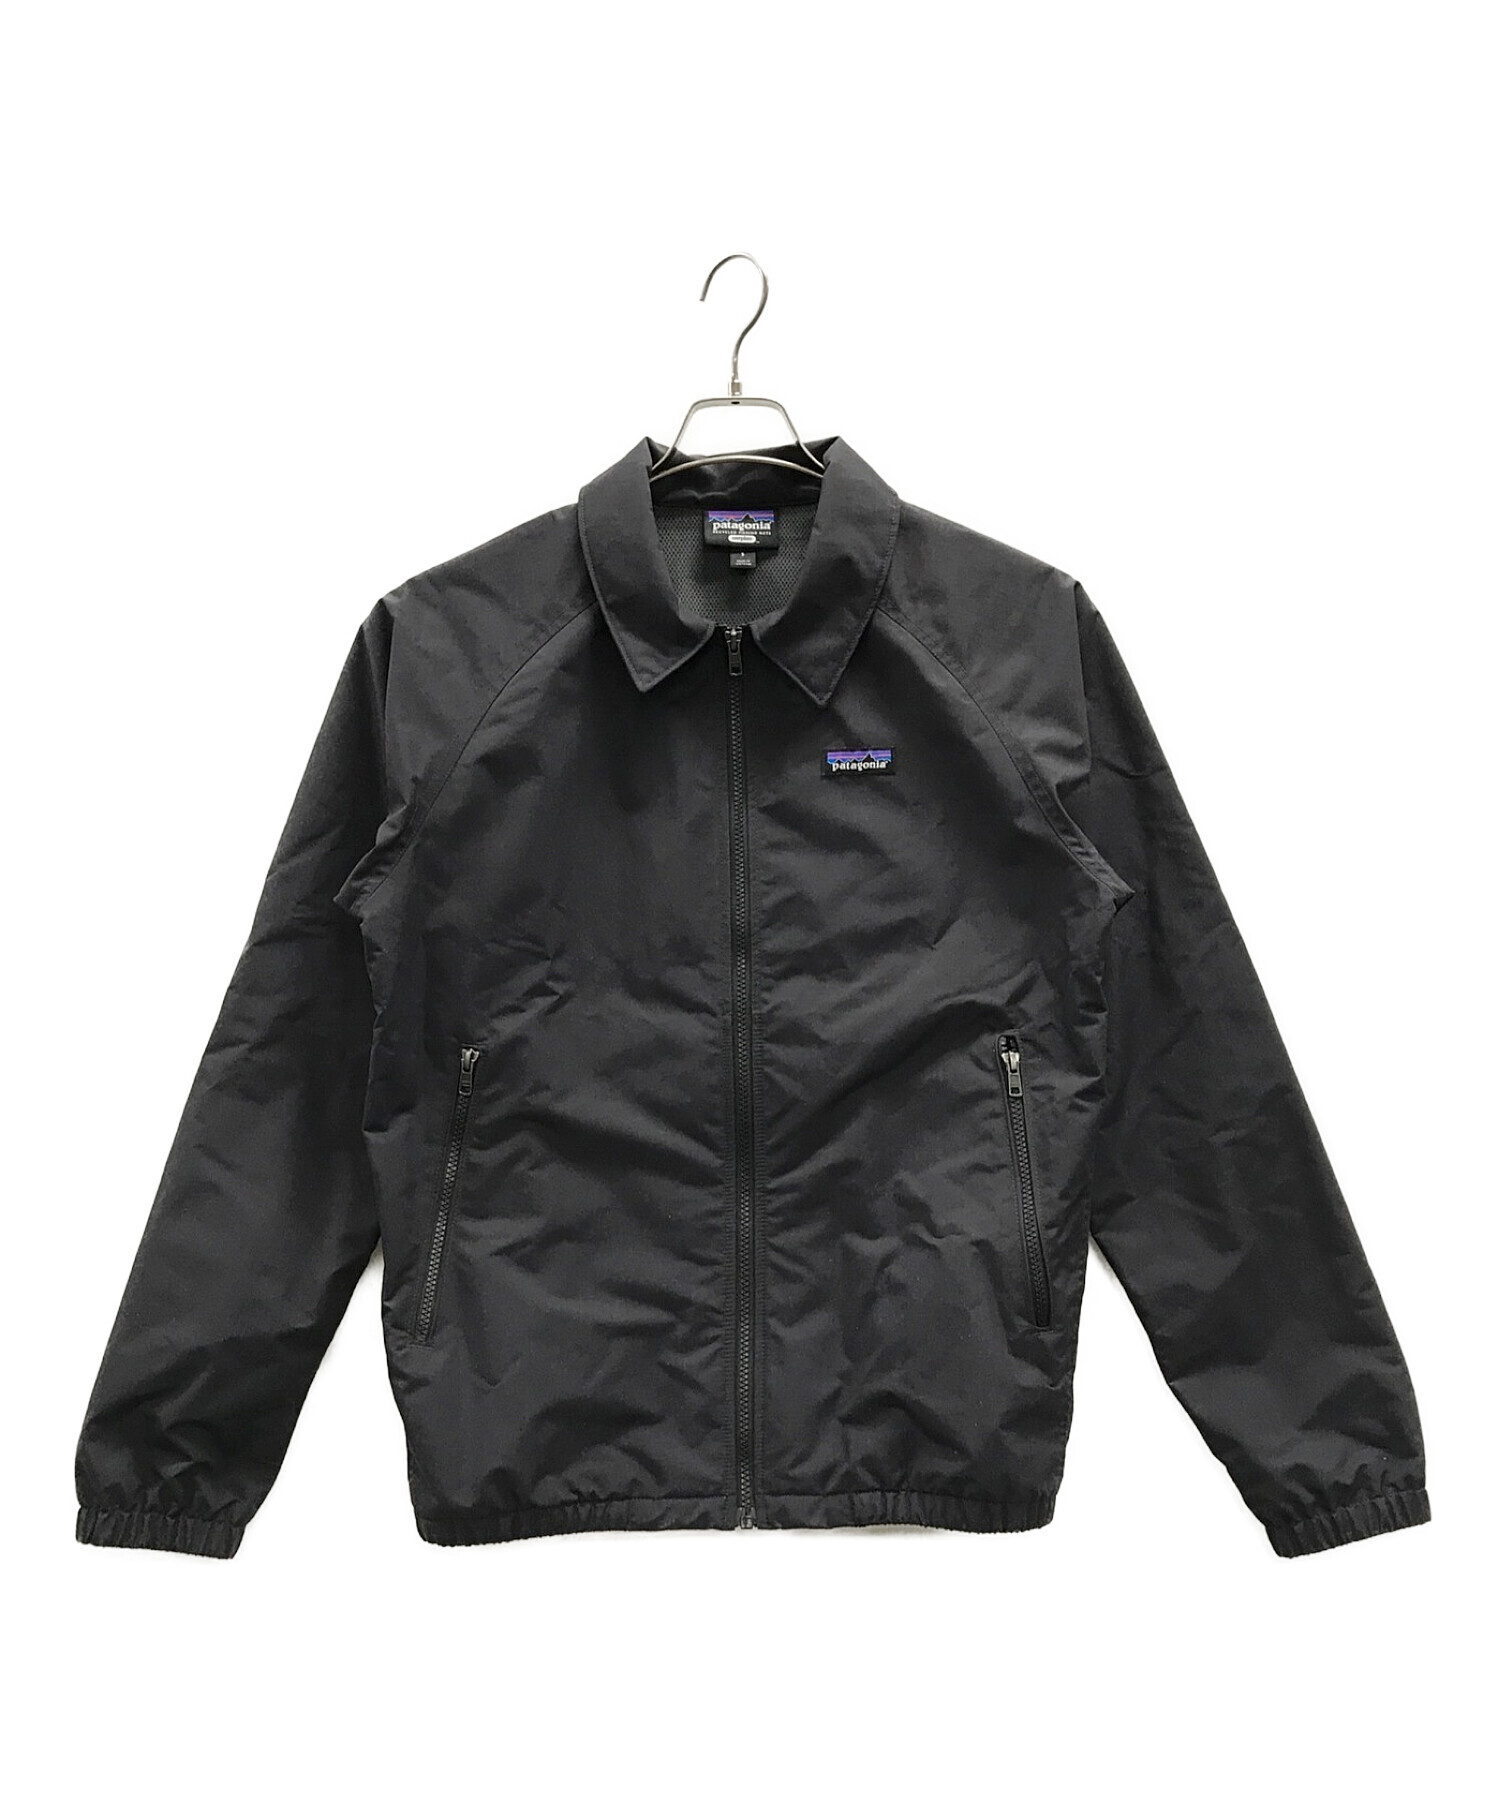 Patagonia (パタゴニア) バギーズジャケット ブラック サイズ:S